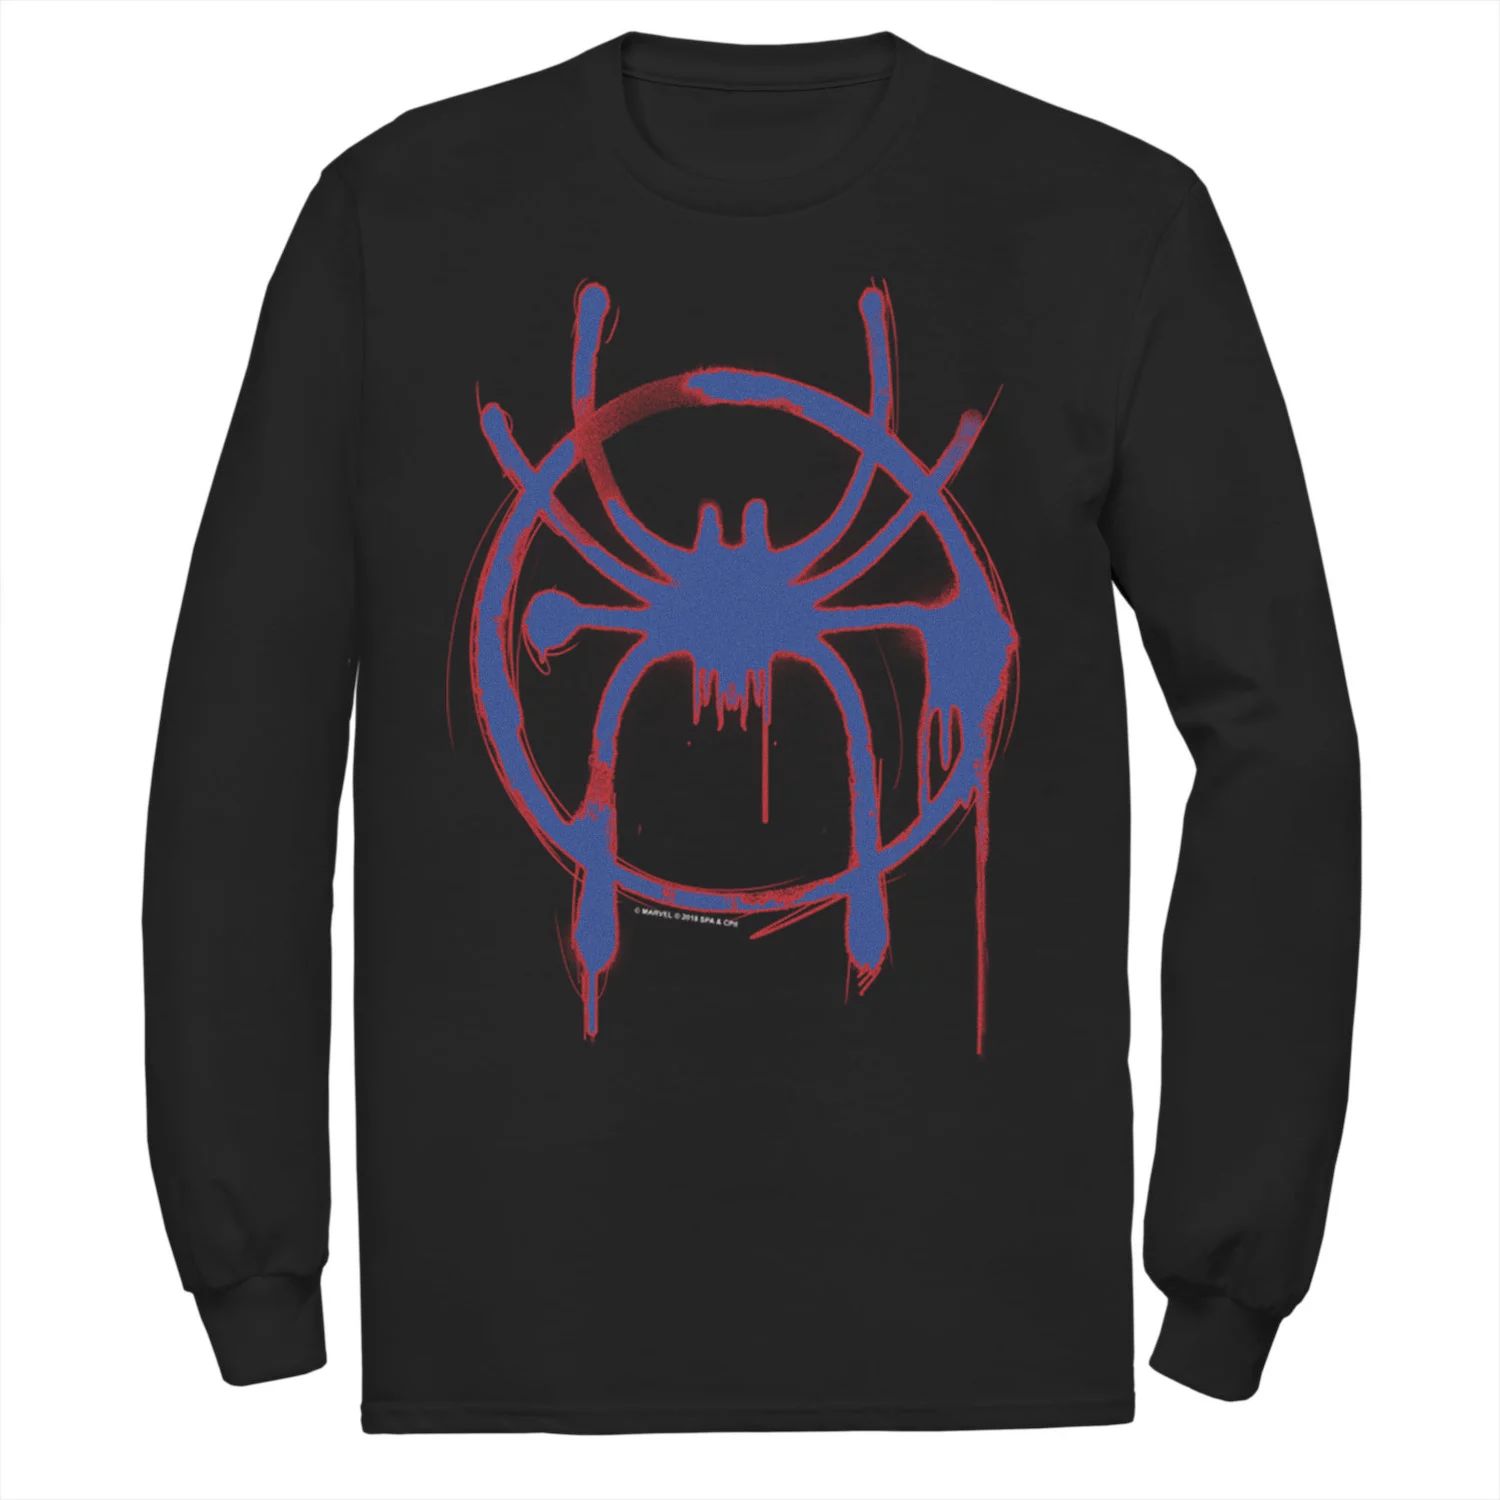 мужская майка marvel into the spider verse Мужская футболка с логотипом Marvel Into The Spider-Verse Spray Paint